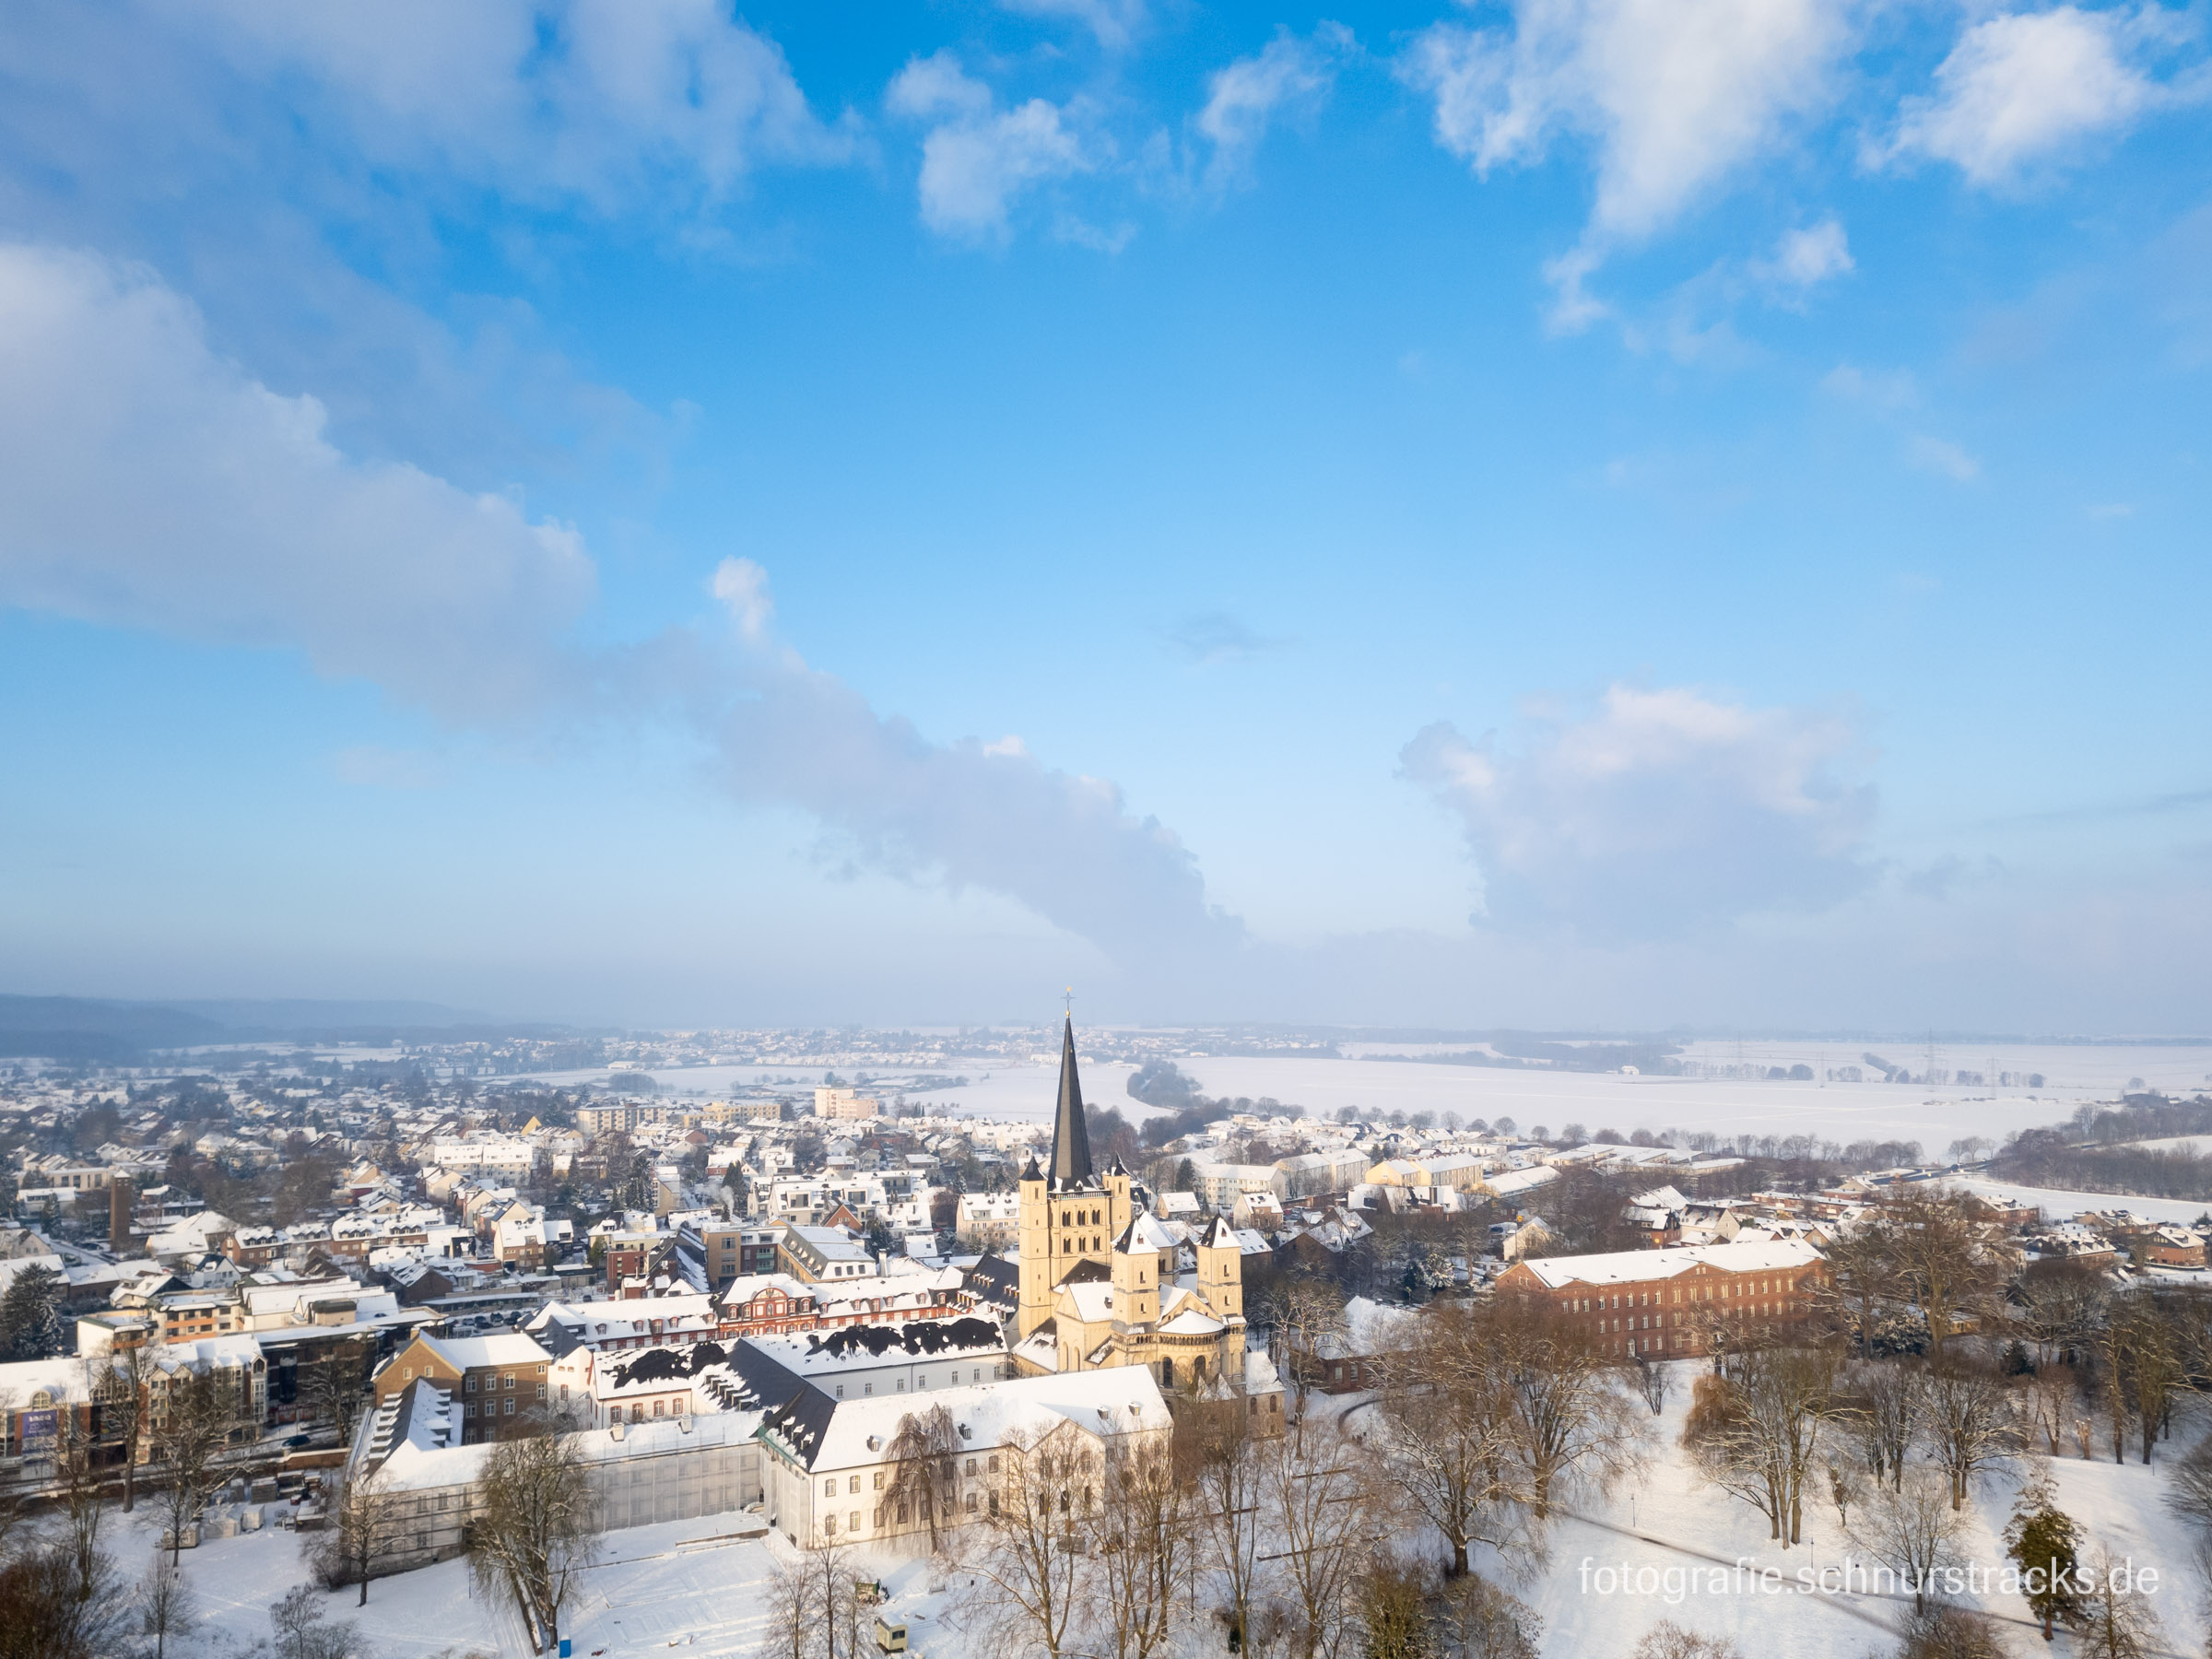 Luftbild der Abtei Brauweiler im Schnee #240119-0438